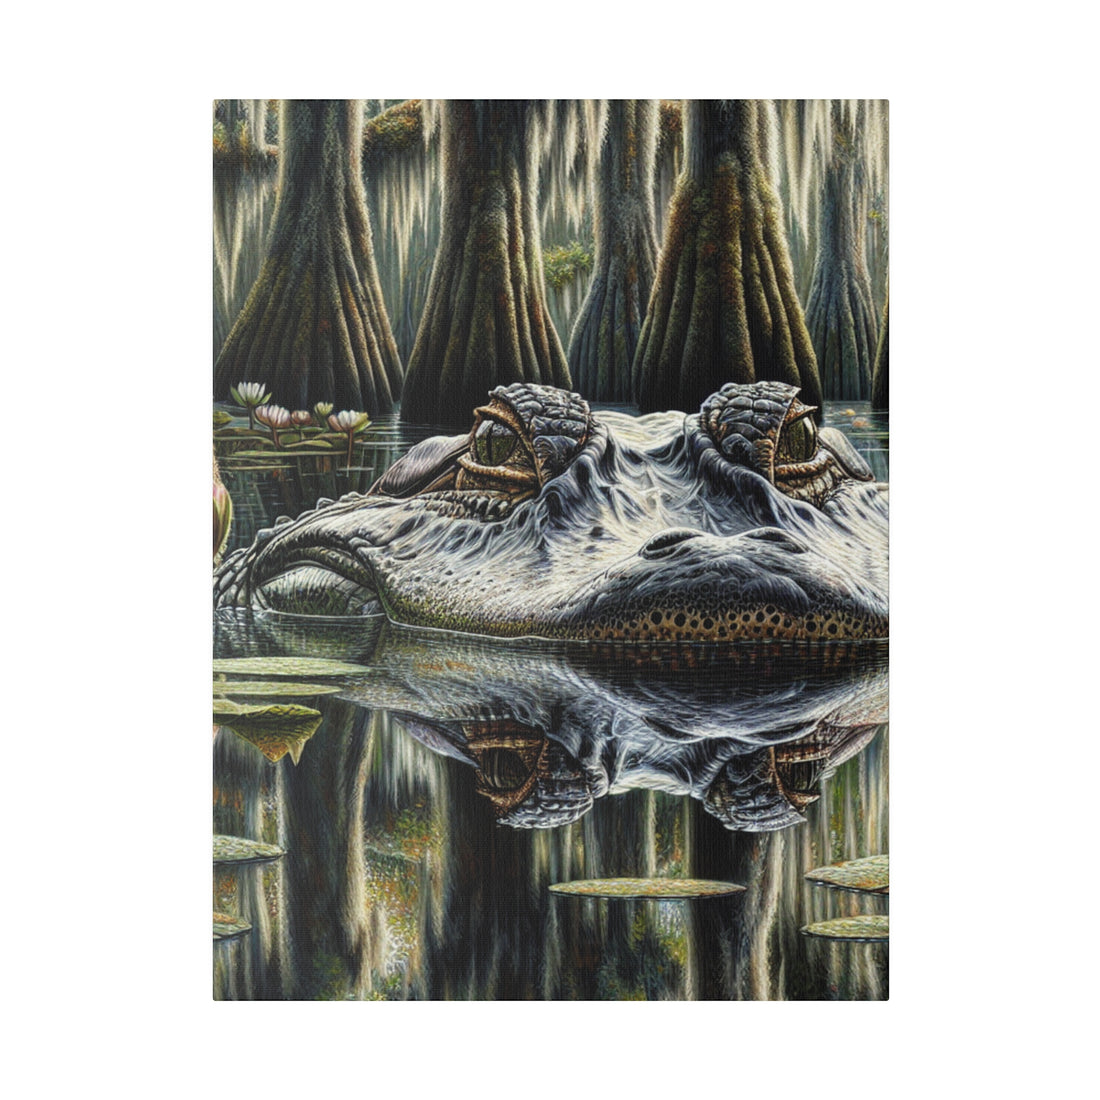 "Alligator Allure: The Wilderness Captured Canvas Wall Art"